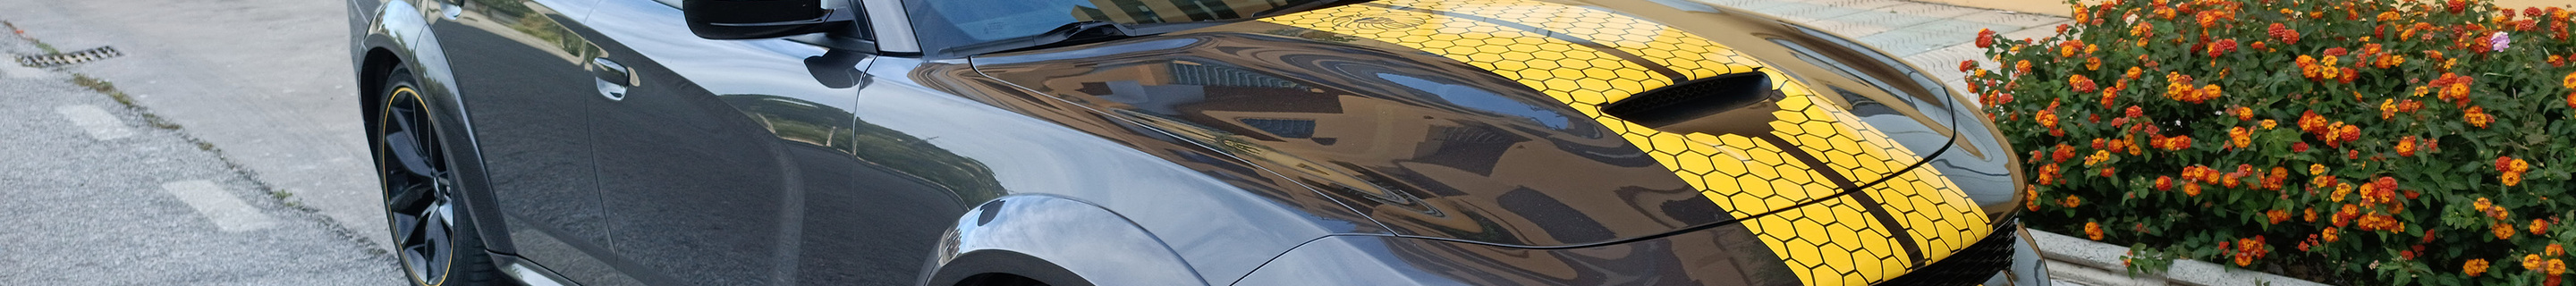 Dodge Charger SRT 392 2015